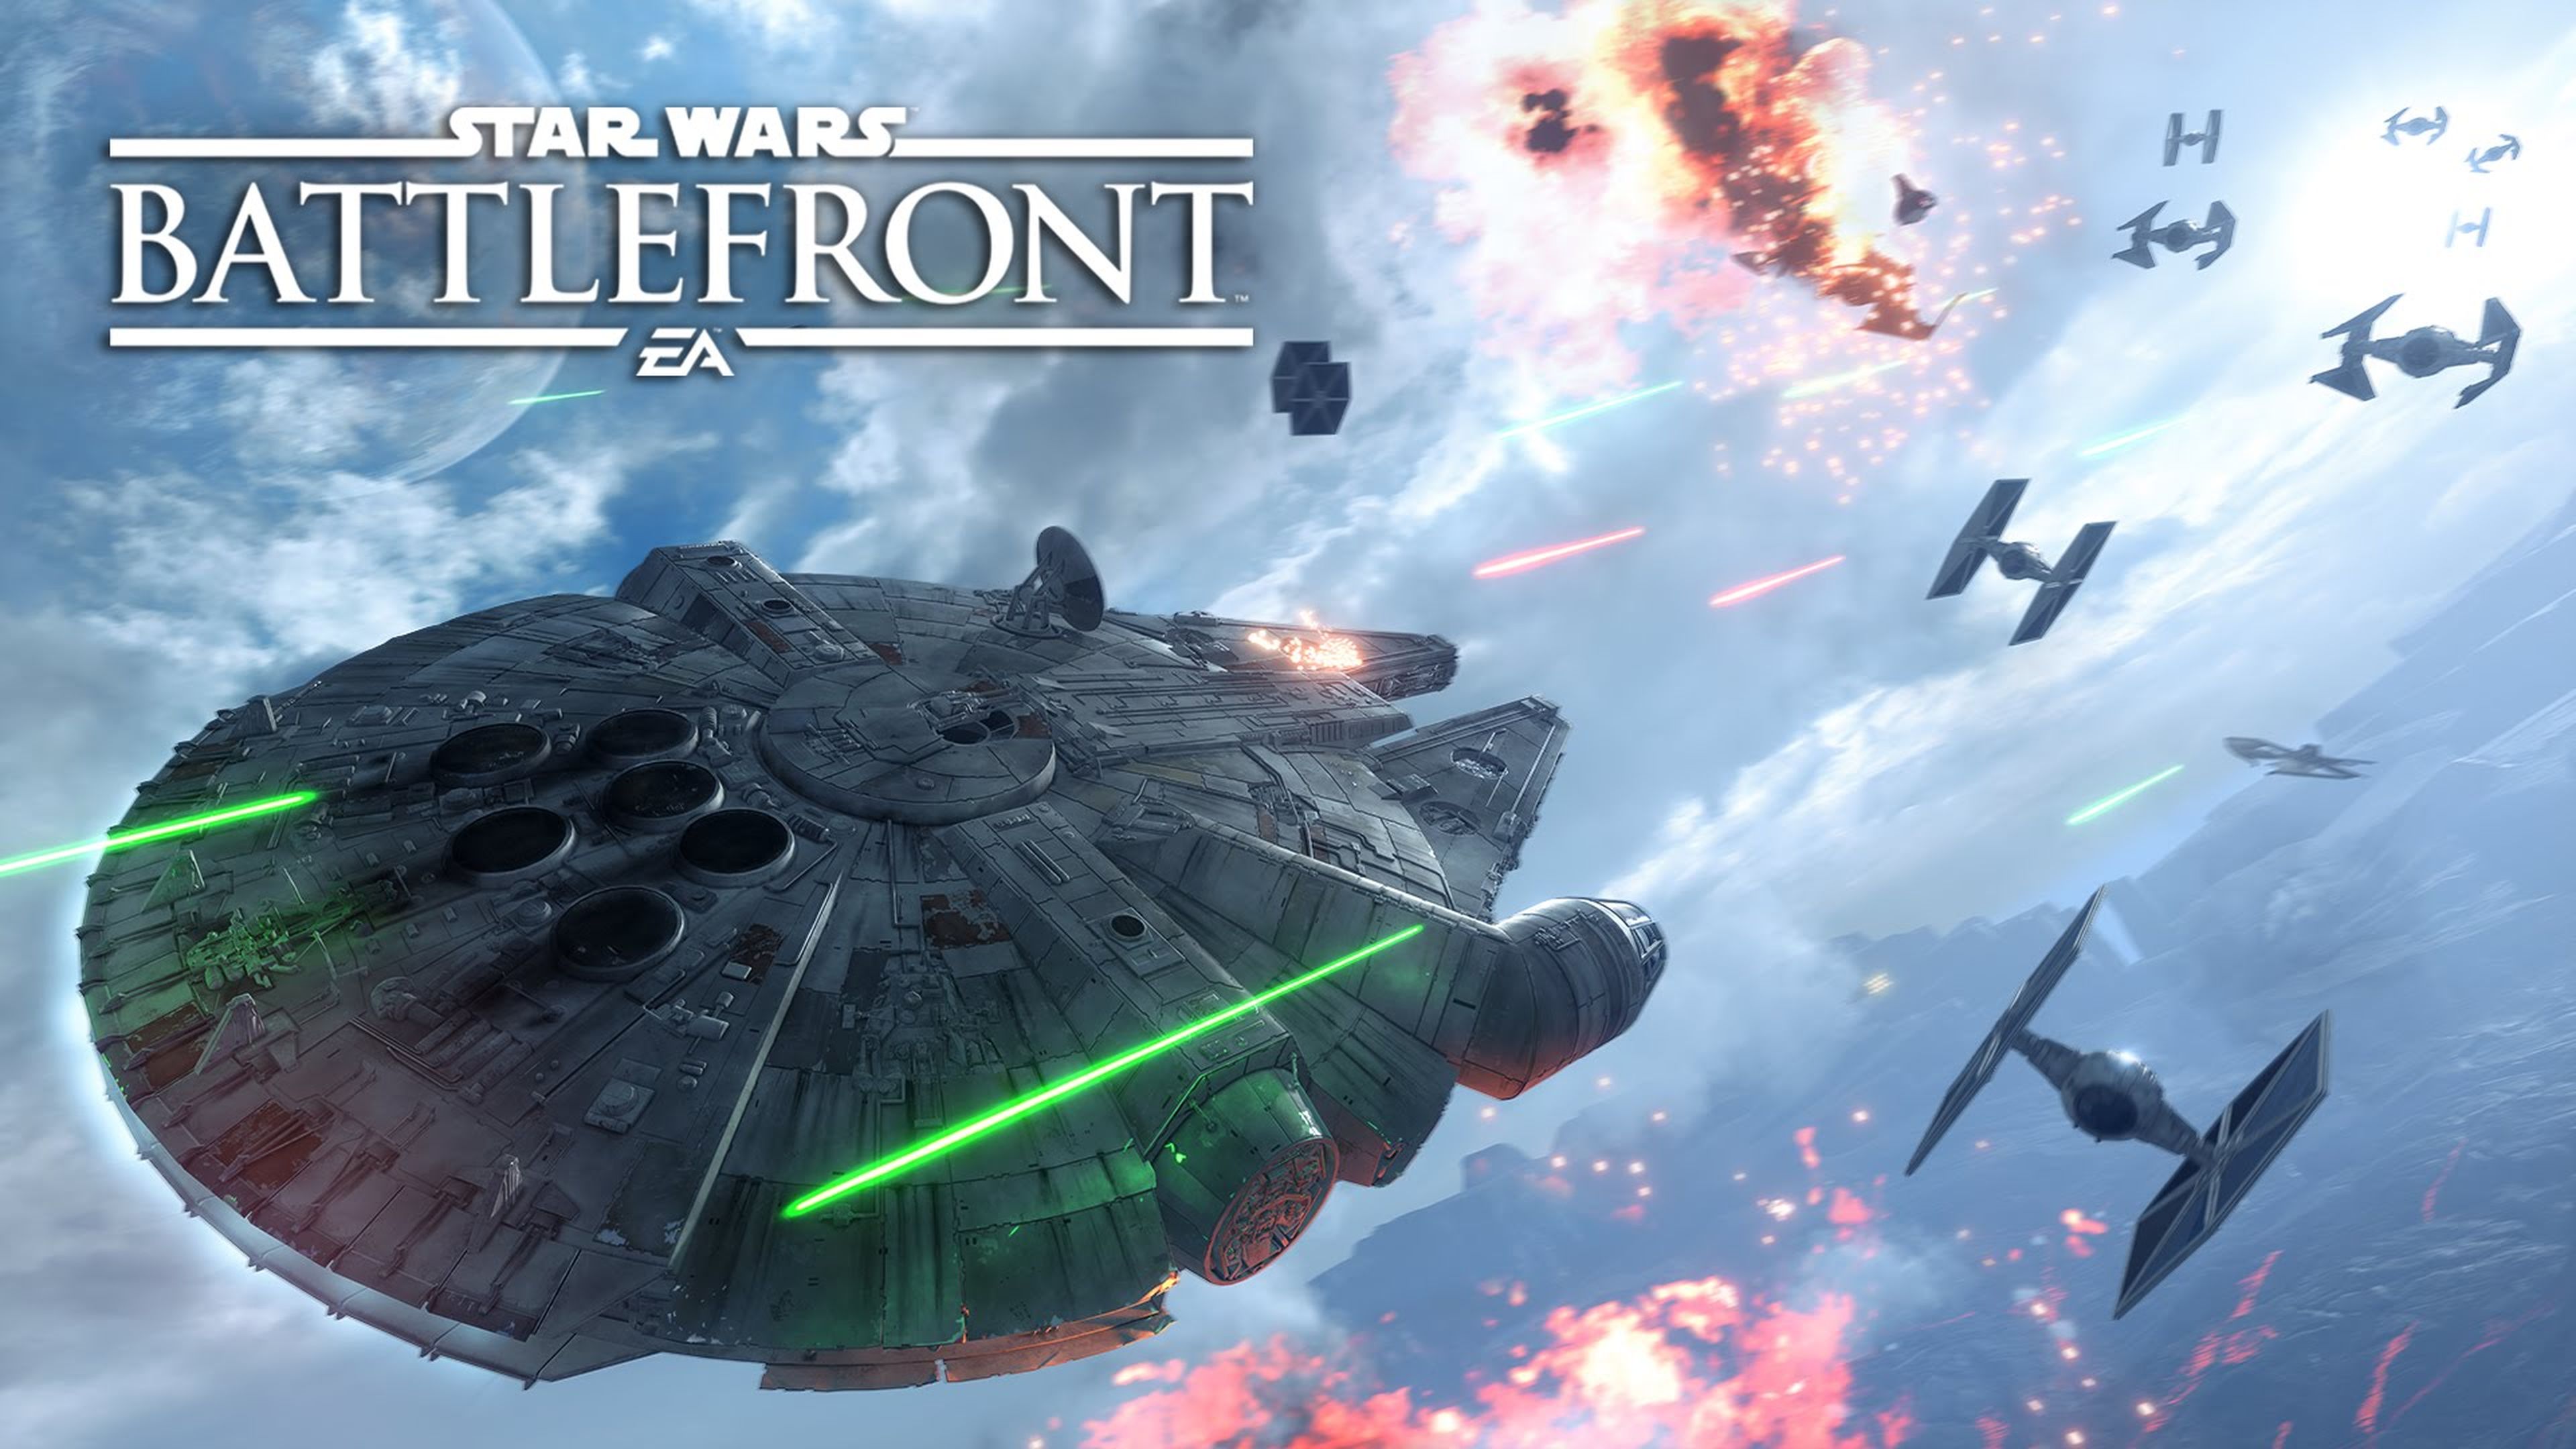 Star Wars Battlefront, EA espera vender 13 millones de unidades